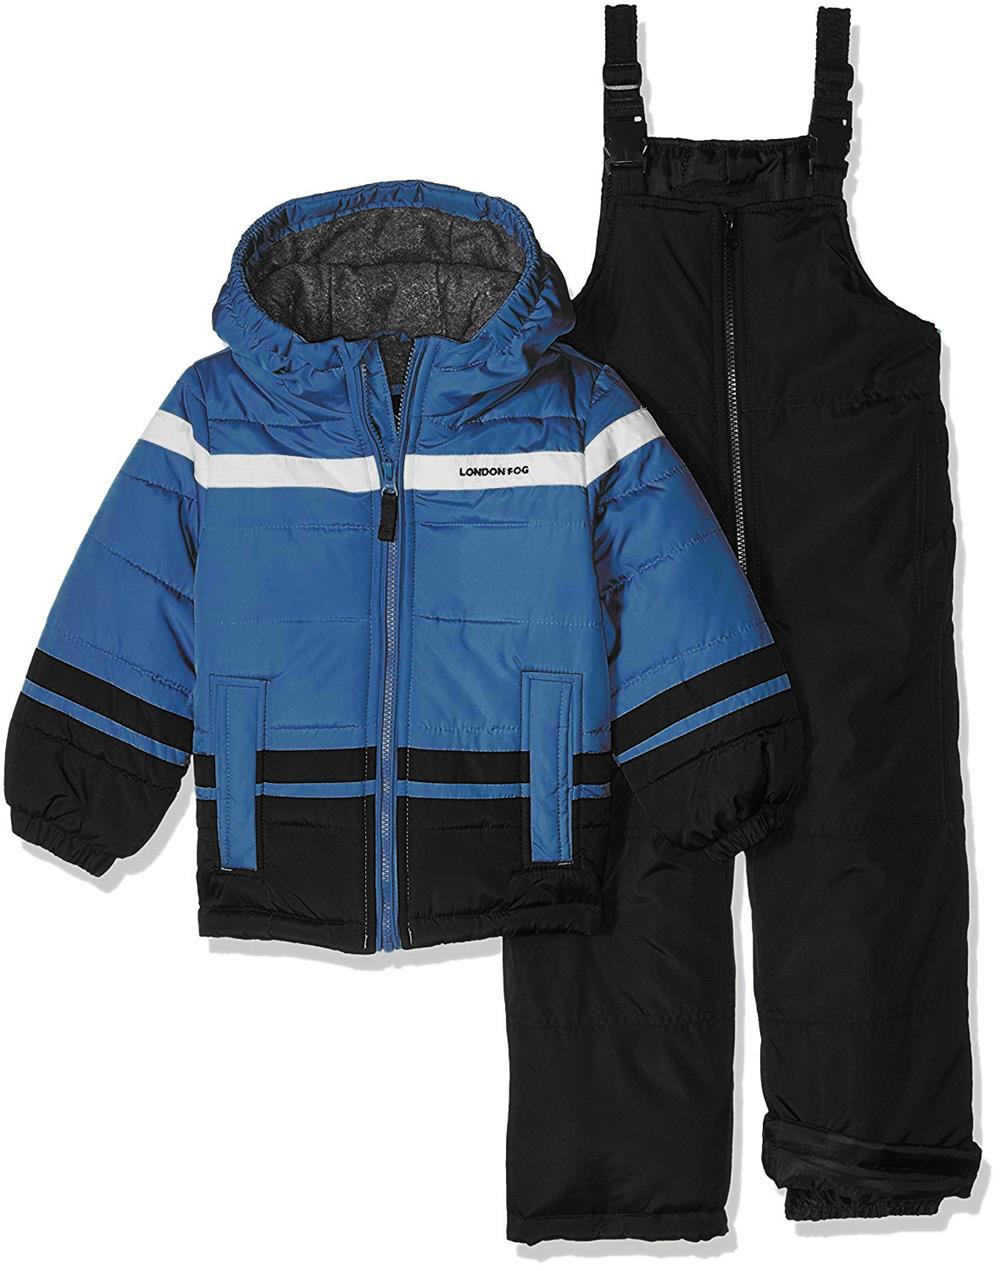 London Fog Boys' 12-24 Months 2-Piece Snow Pant & Jacket Snowsuit